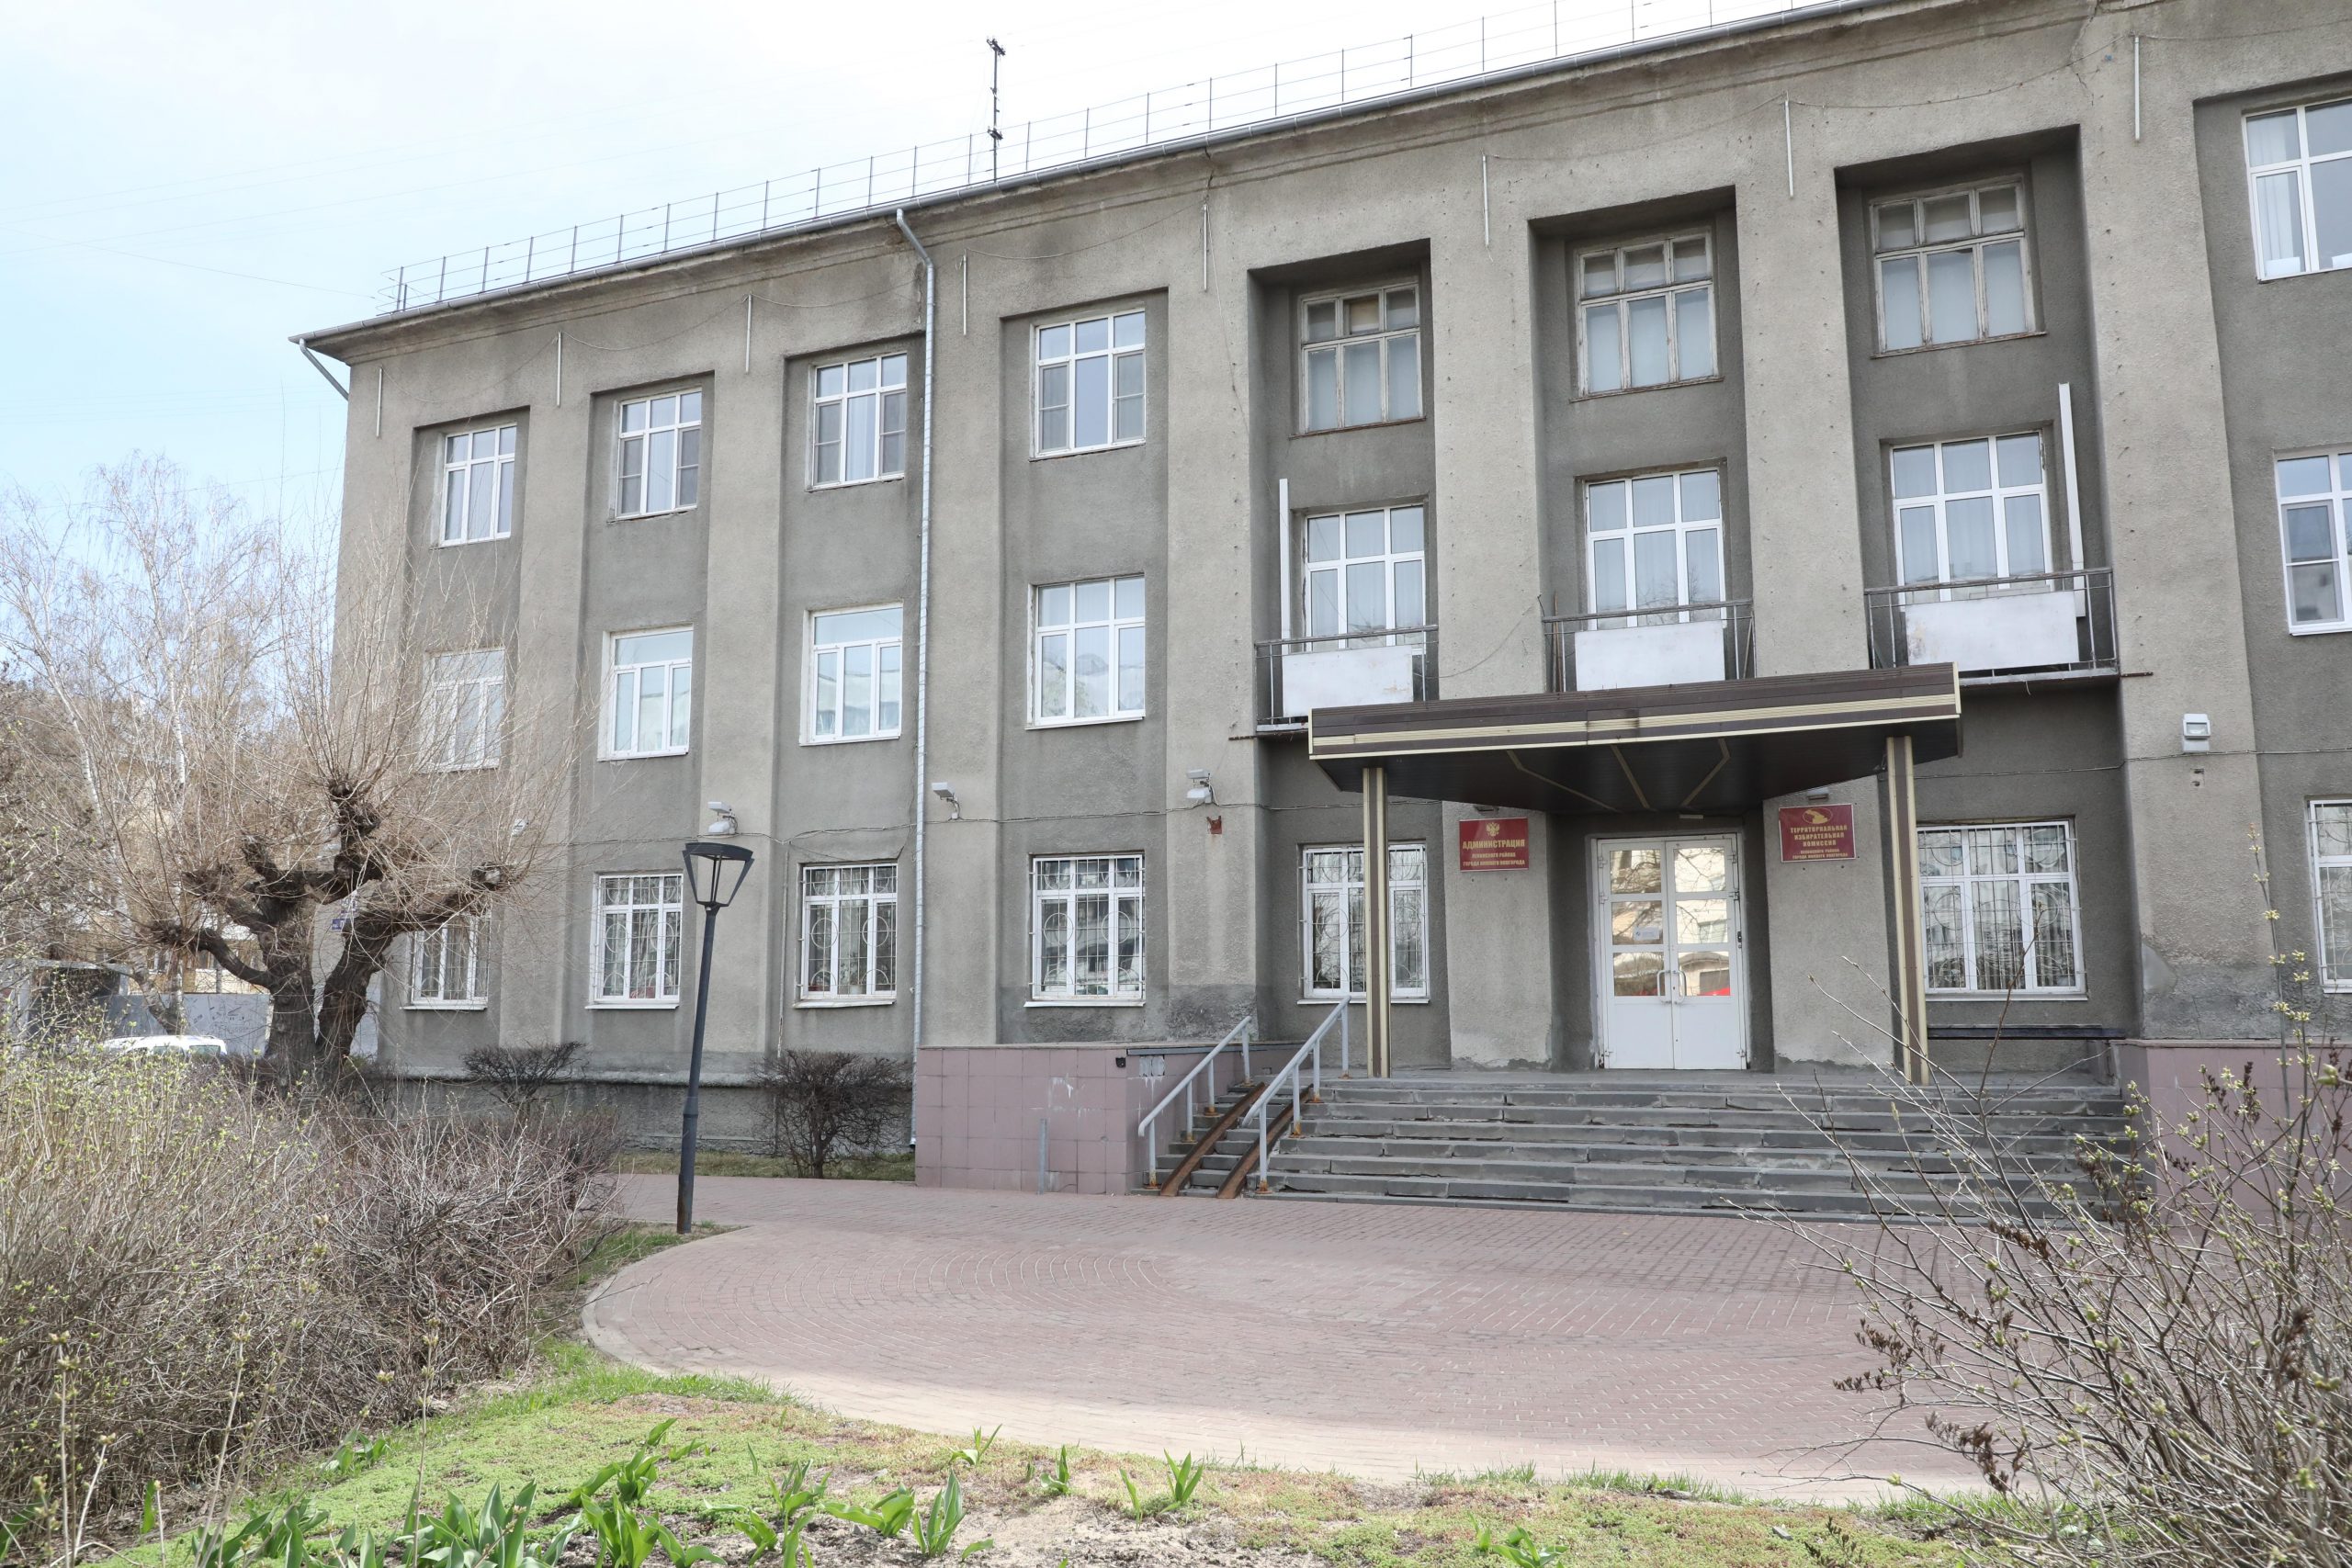 Сквер «Труженикам тыла» у здания администрации Ленинского района не успели благоустроить вовремя